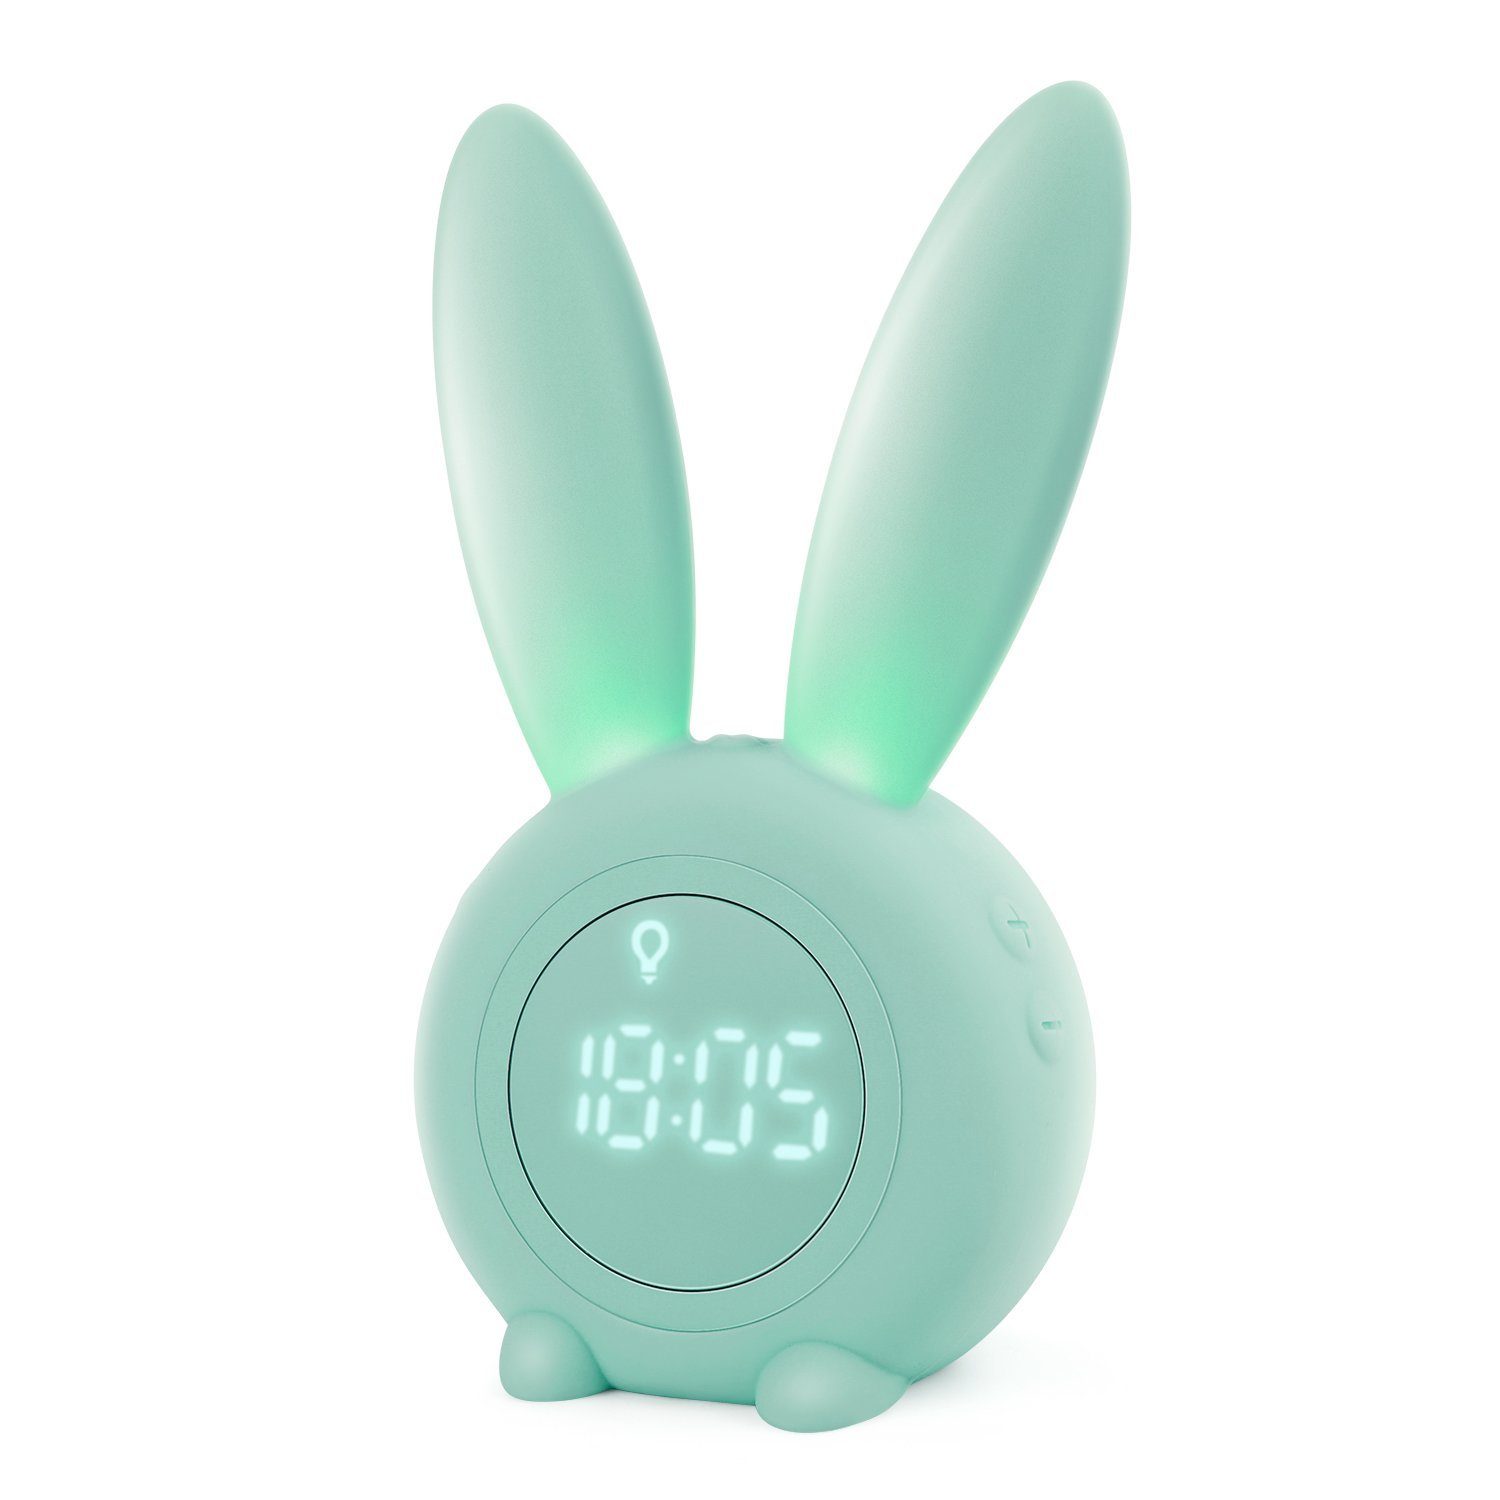 Kinderwecker Rabbit Grün Nachtlicht Kinder zeitgesteuertes Cute Snooze-Funktion EXTSUD Lichtwecker Creative Wecker Nachttischlampe